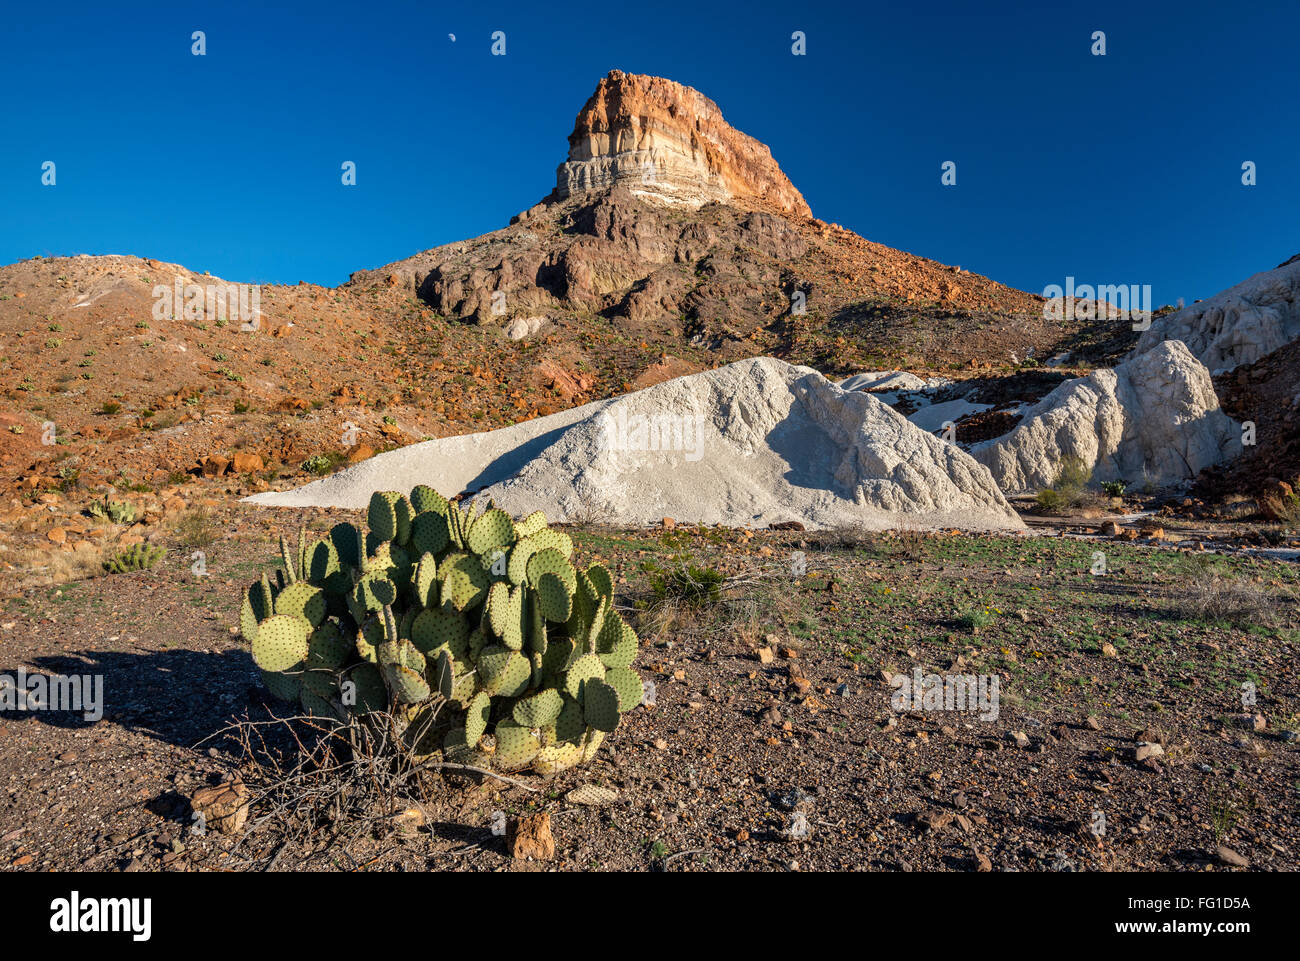 Cerro Castellan aka Castolon Peak, weiße vulkanischen Tuffen oder Asche Ablagerungen, Feigenkaktus, Big Bend National Park, Texas, USA Stockfoto